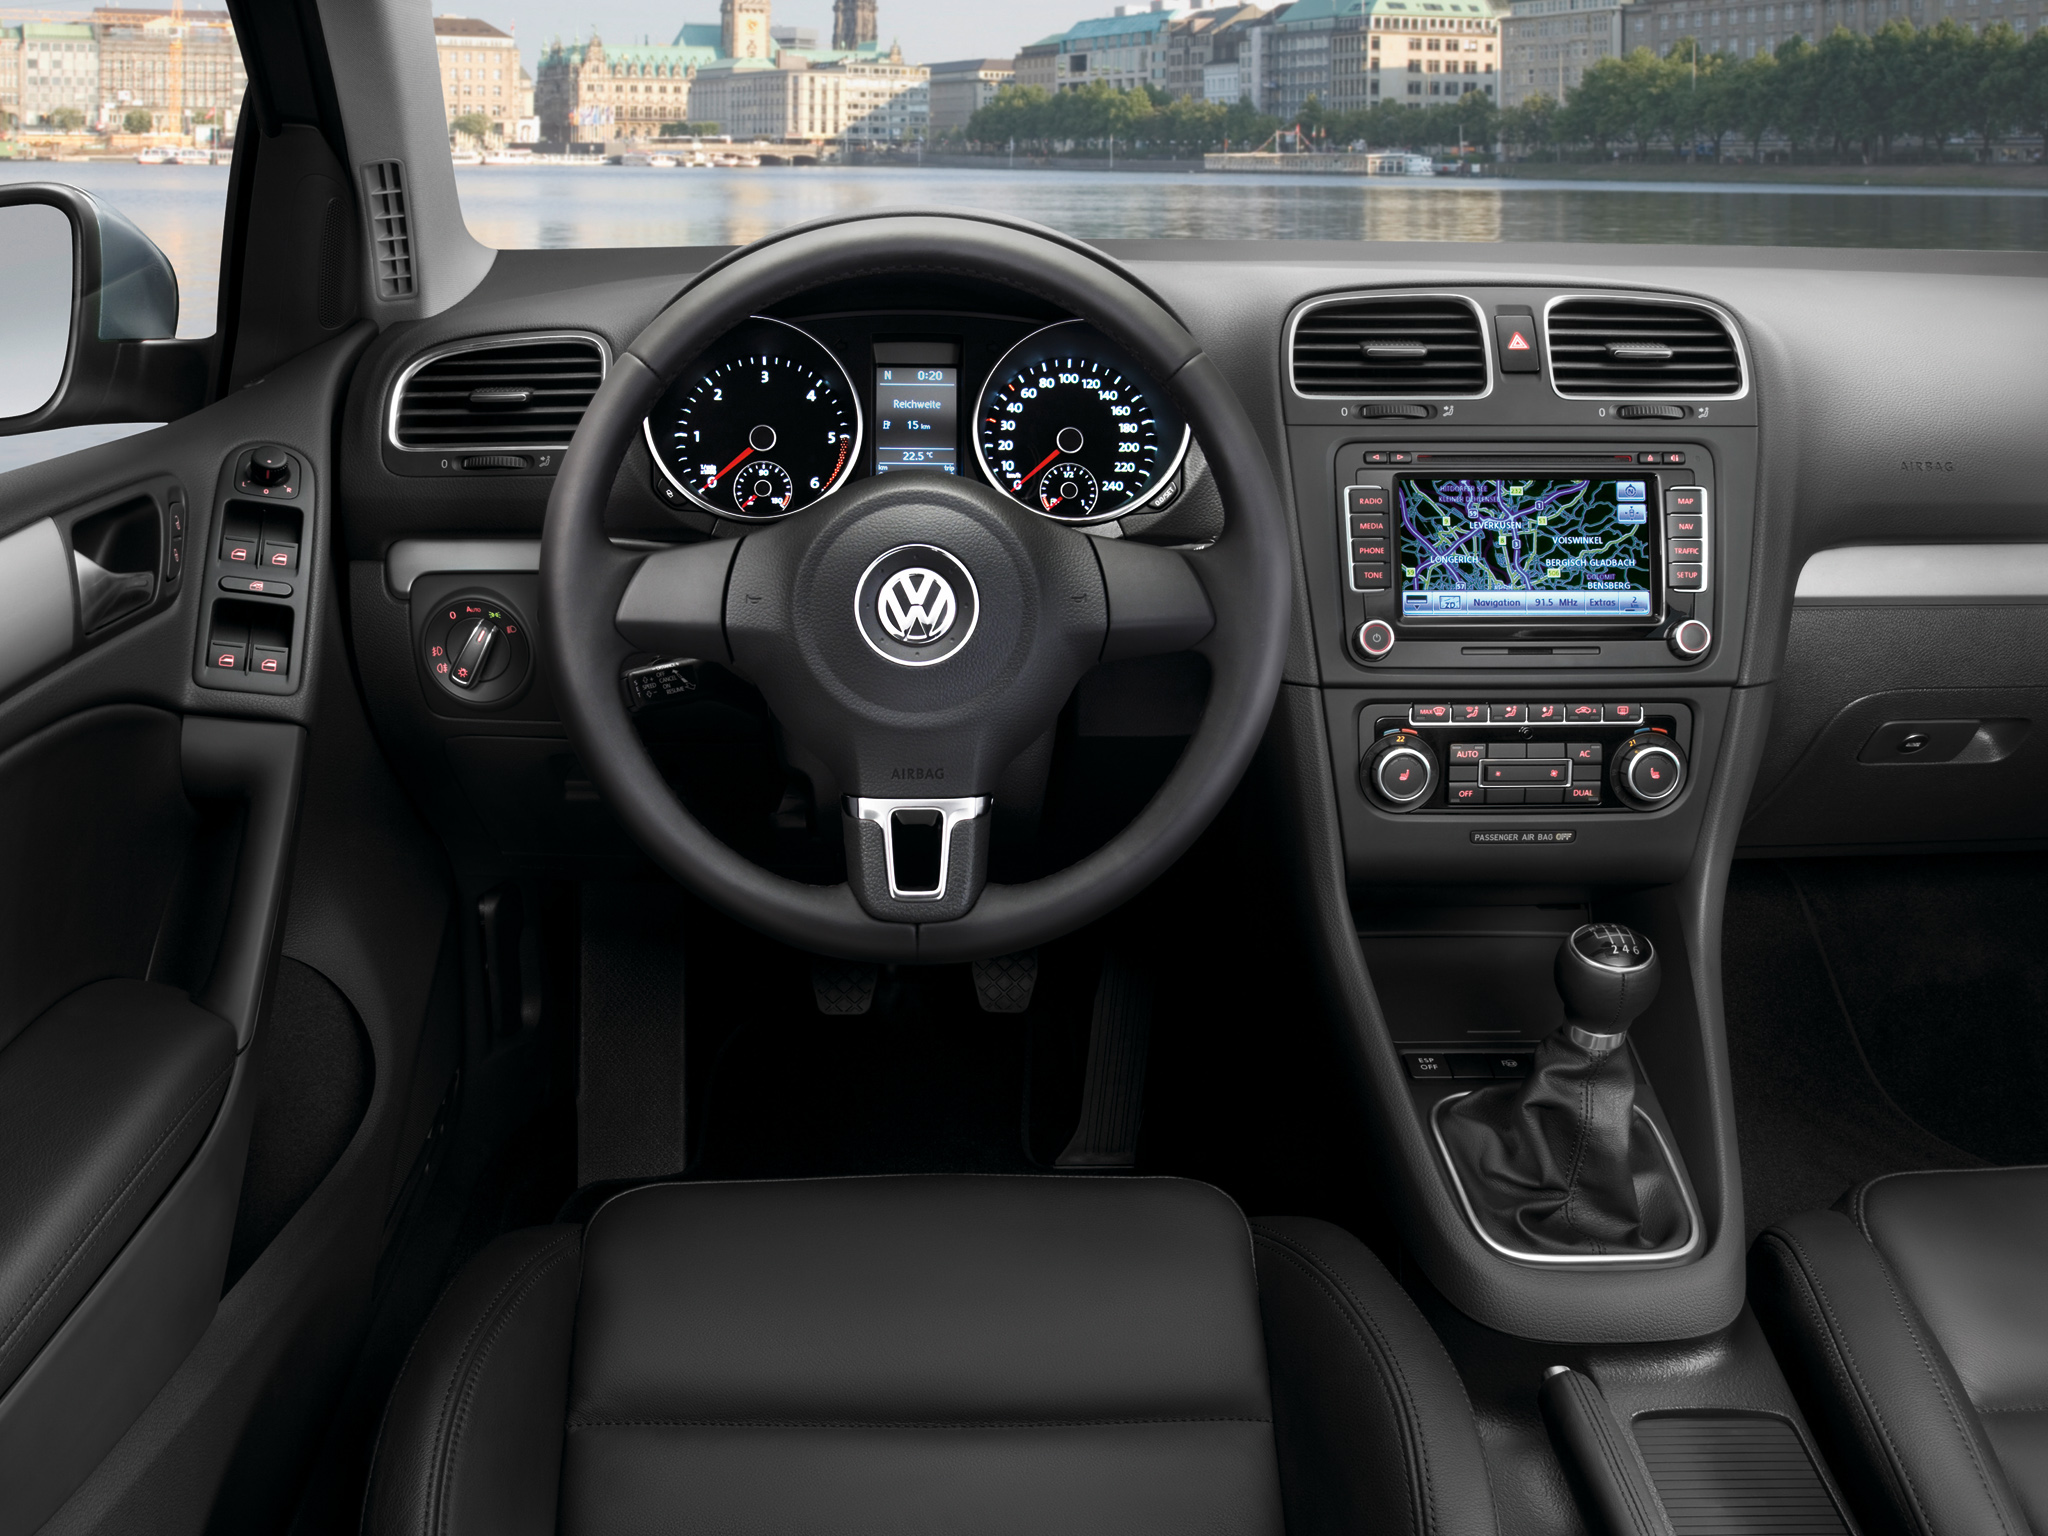 Тест-драйв новых Volkswagen Golf VI и Mazda 3 от журнала Автостоп